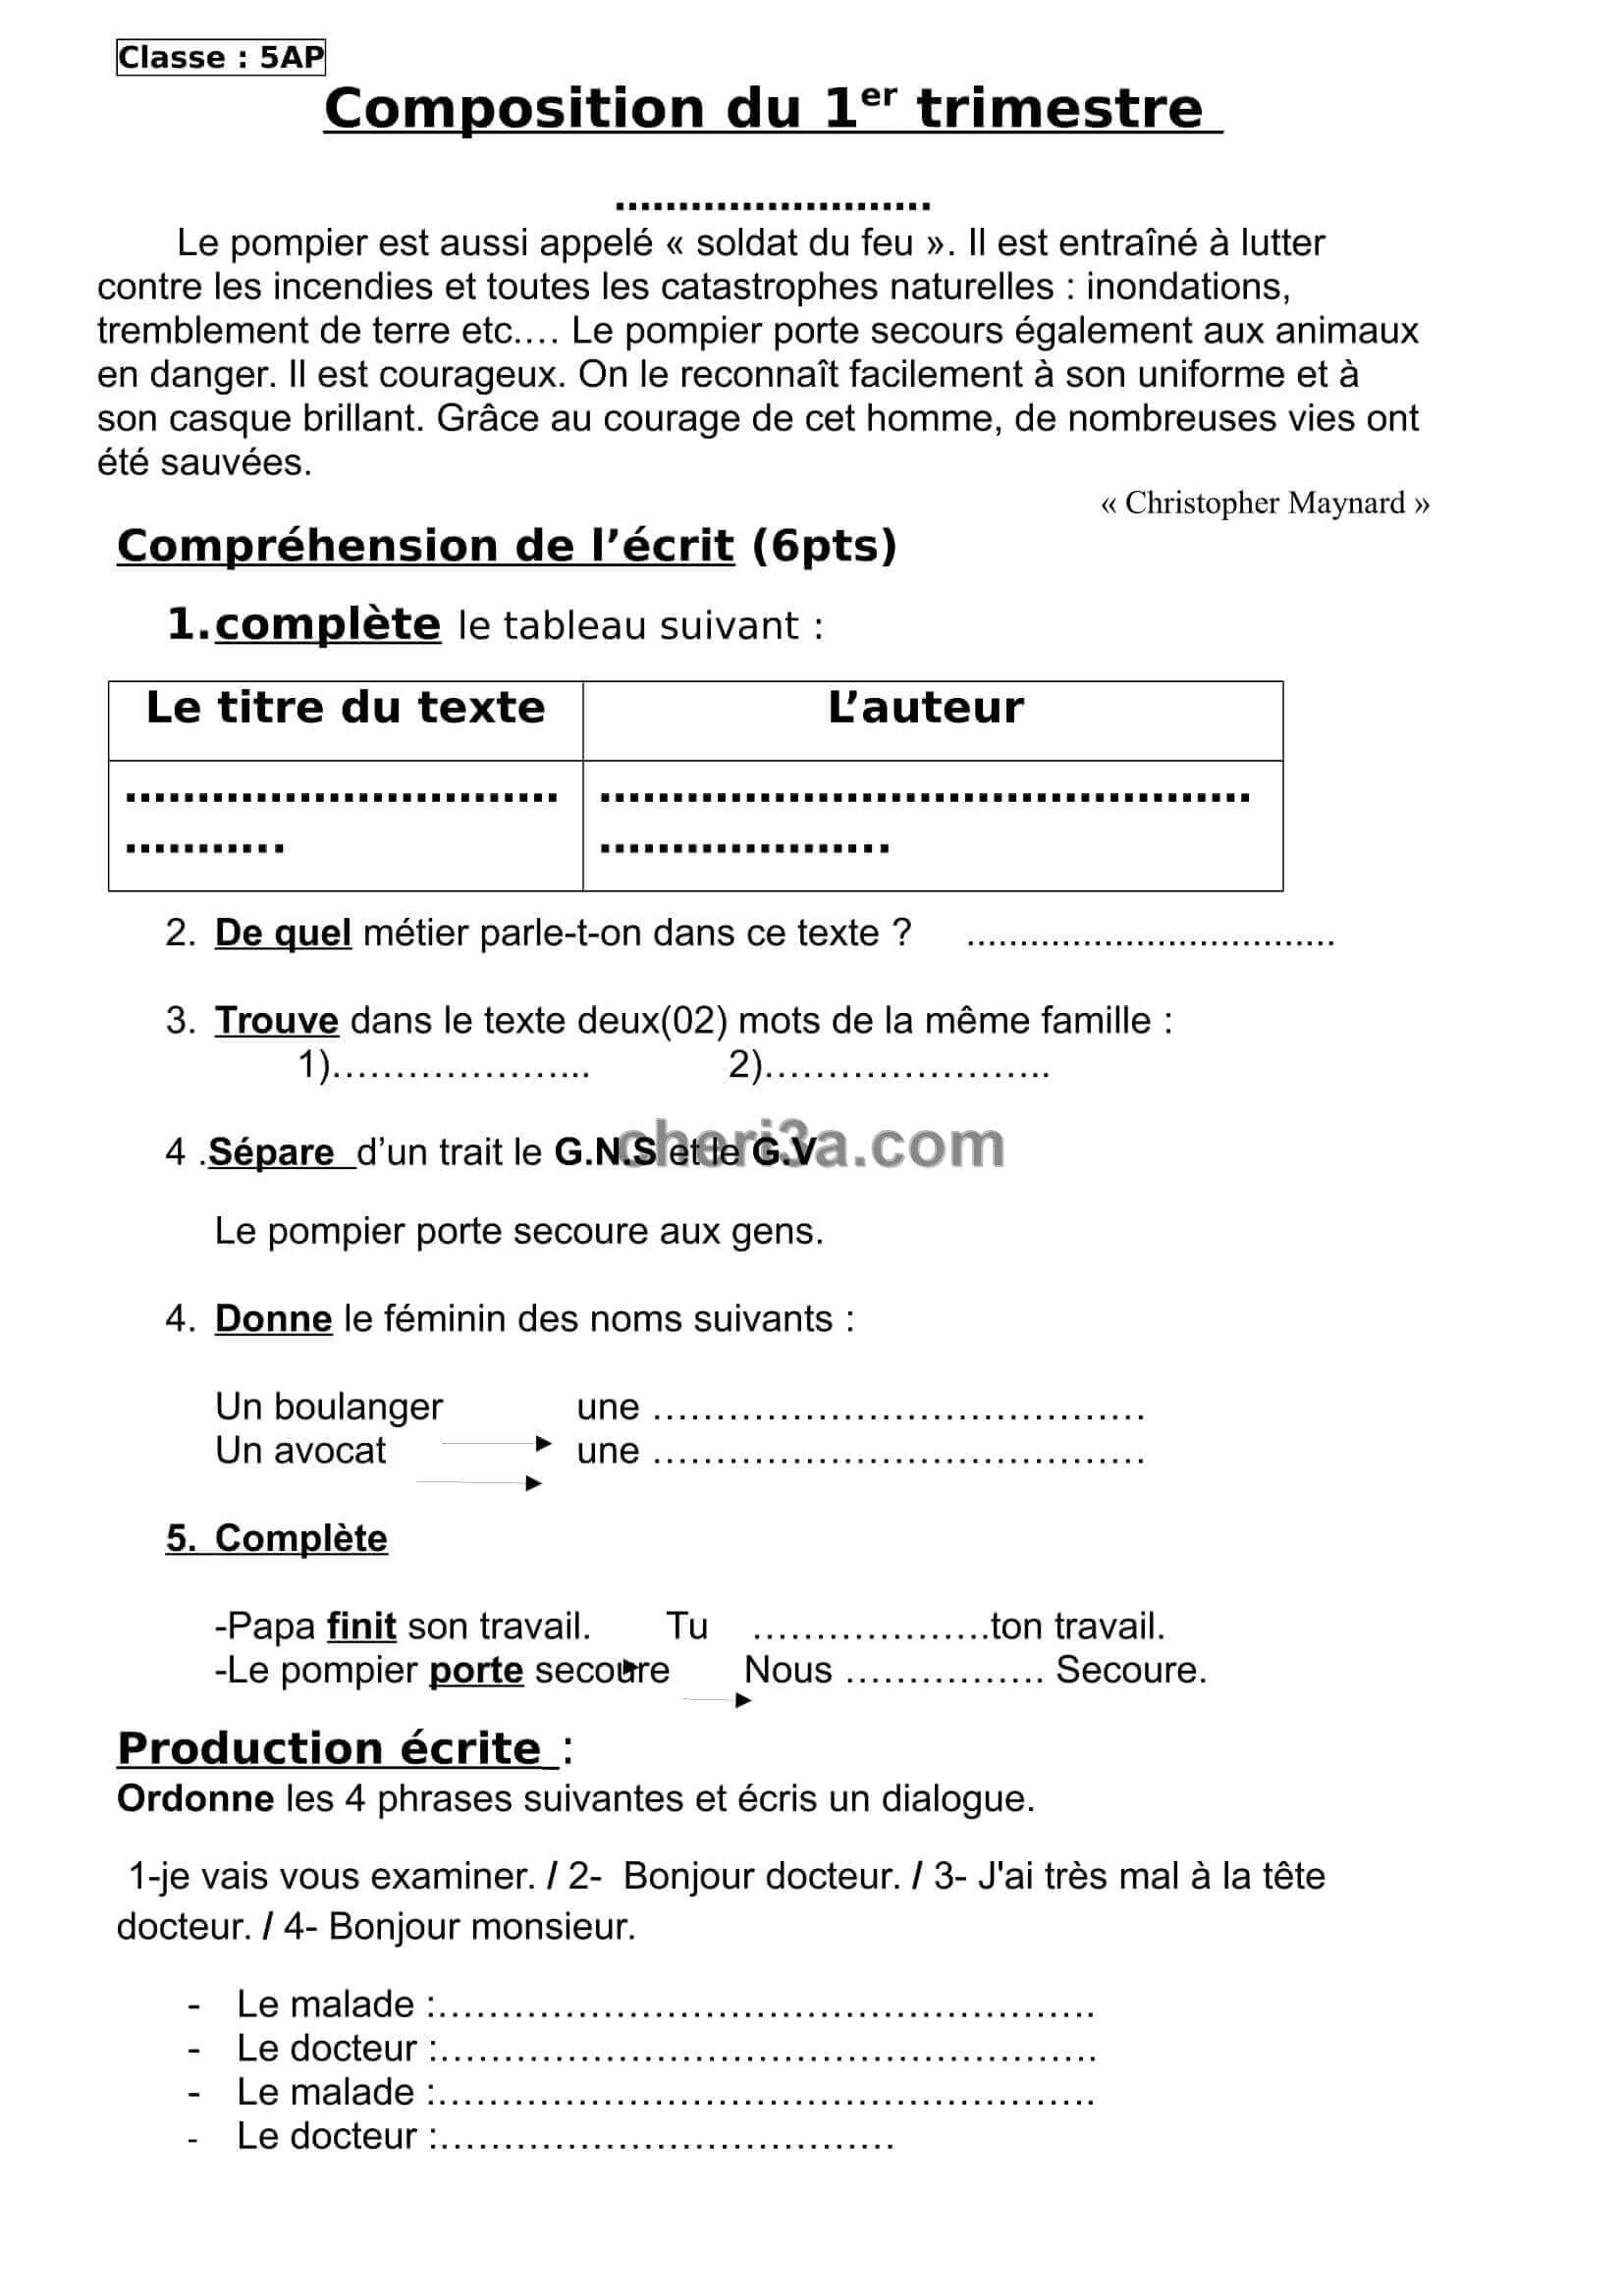 اختبار الفصل للسنة الخامسة ابتدائي في مادة اللغة الفرنسية النموذج 2